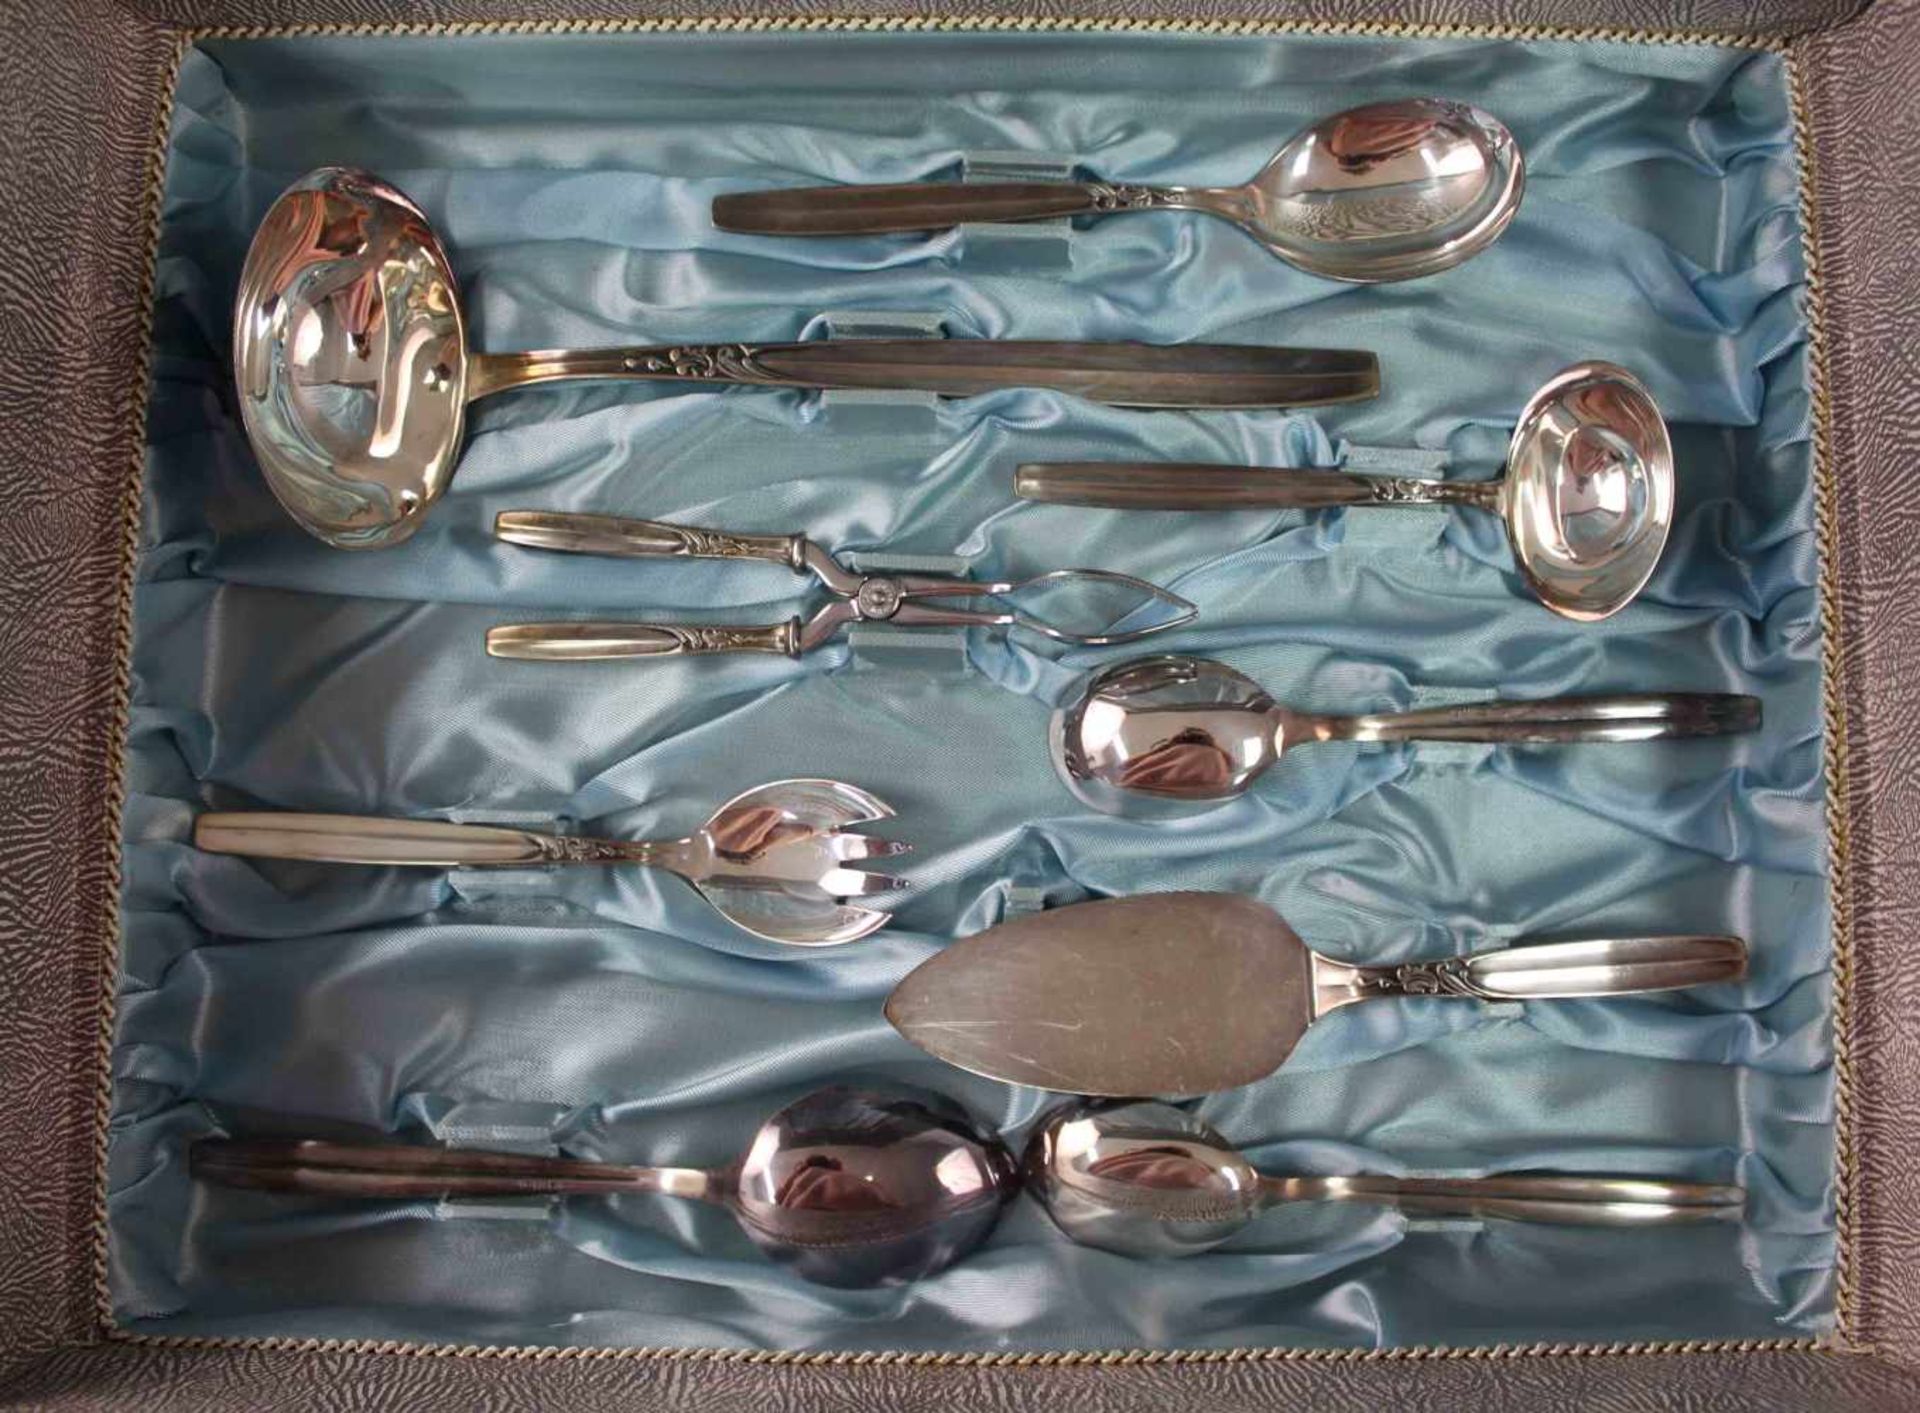 Silberbesteck für 12 Personen in passendem Koffer. Ebel Solingen.2731 Gramm ohne Messer. 75 Teile - Image 9 of 12